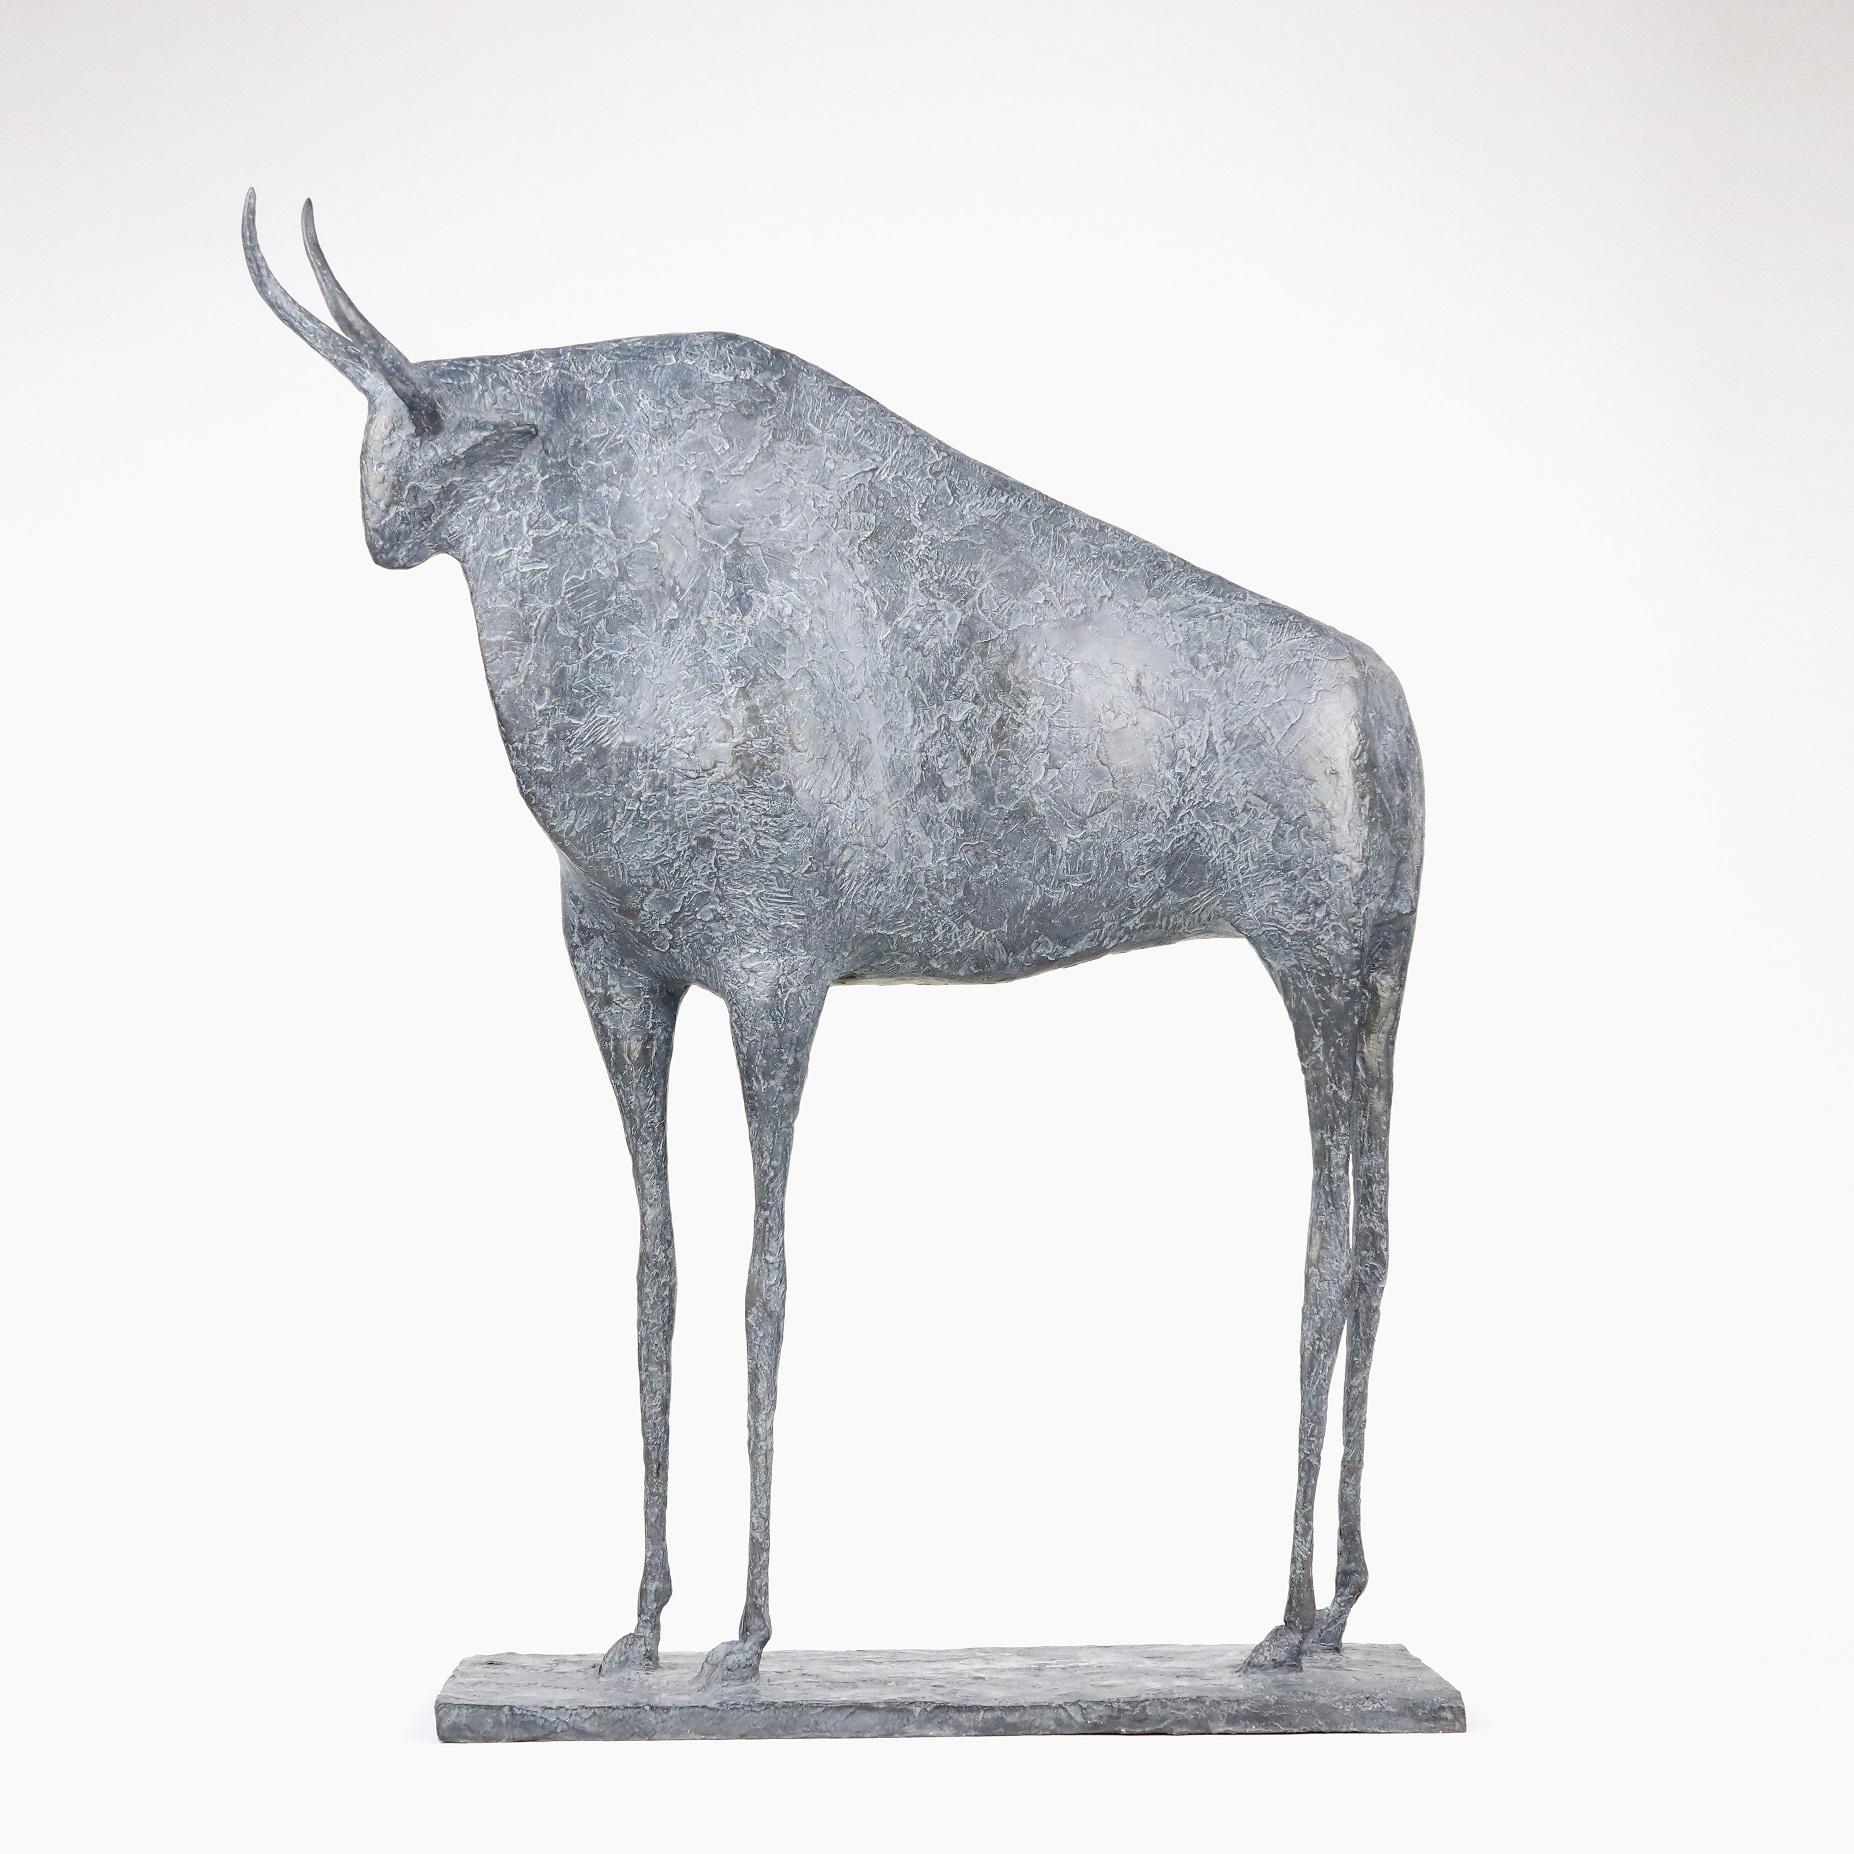 Taureau VII (Bull VII)  - Contemporary Animal Sculpture